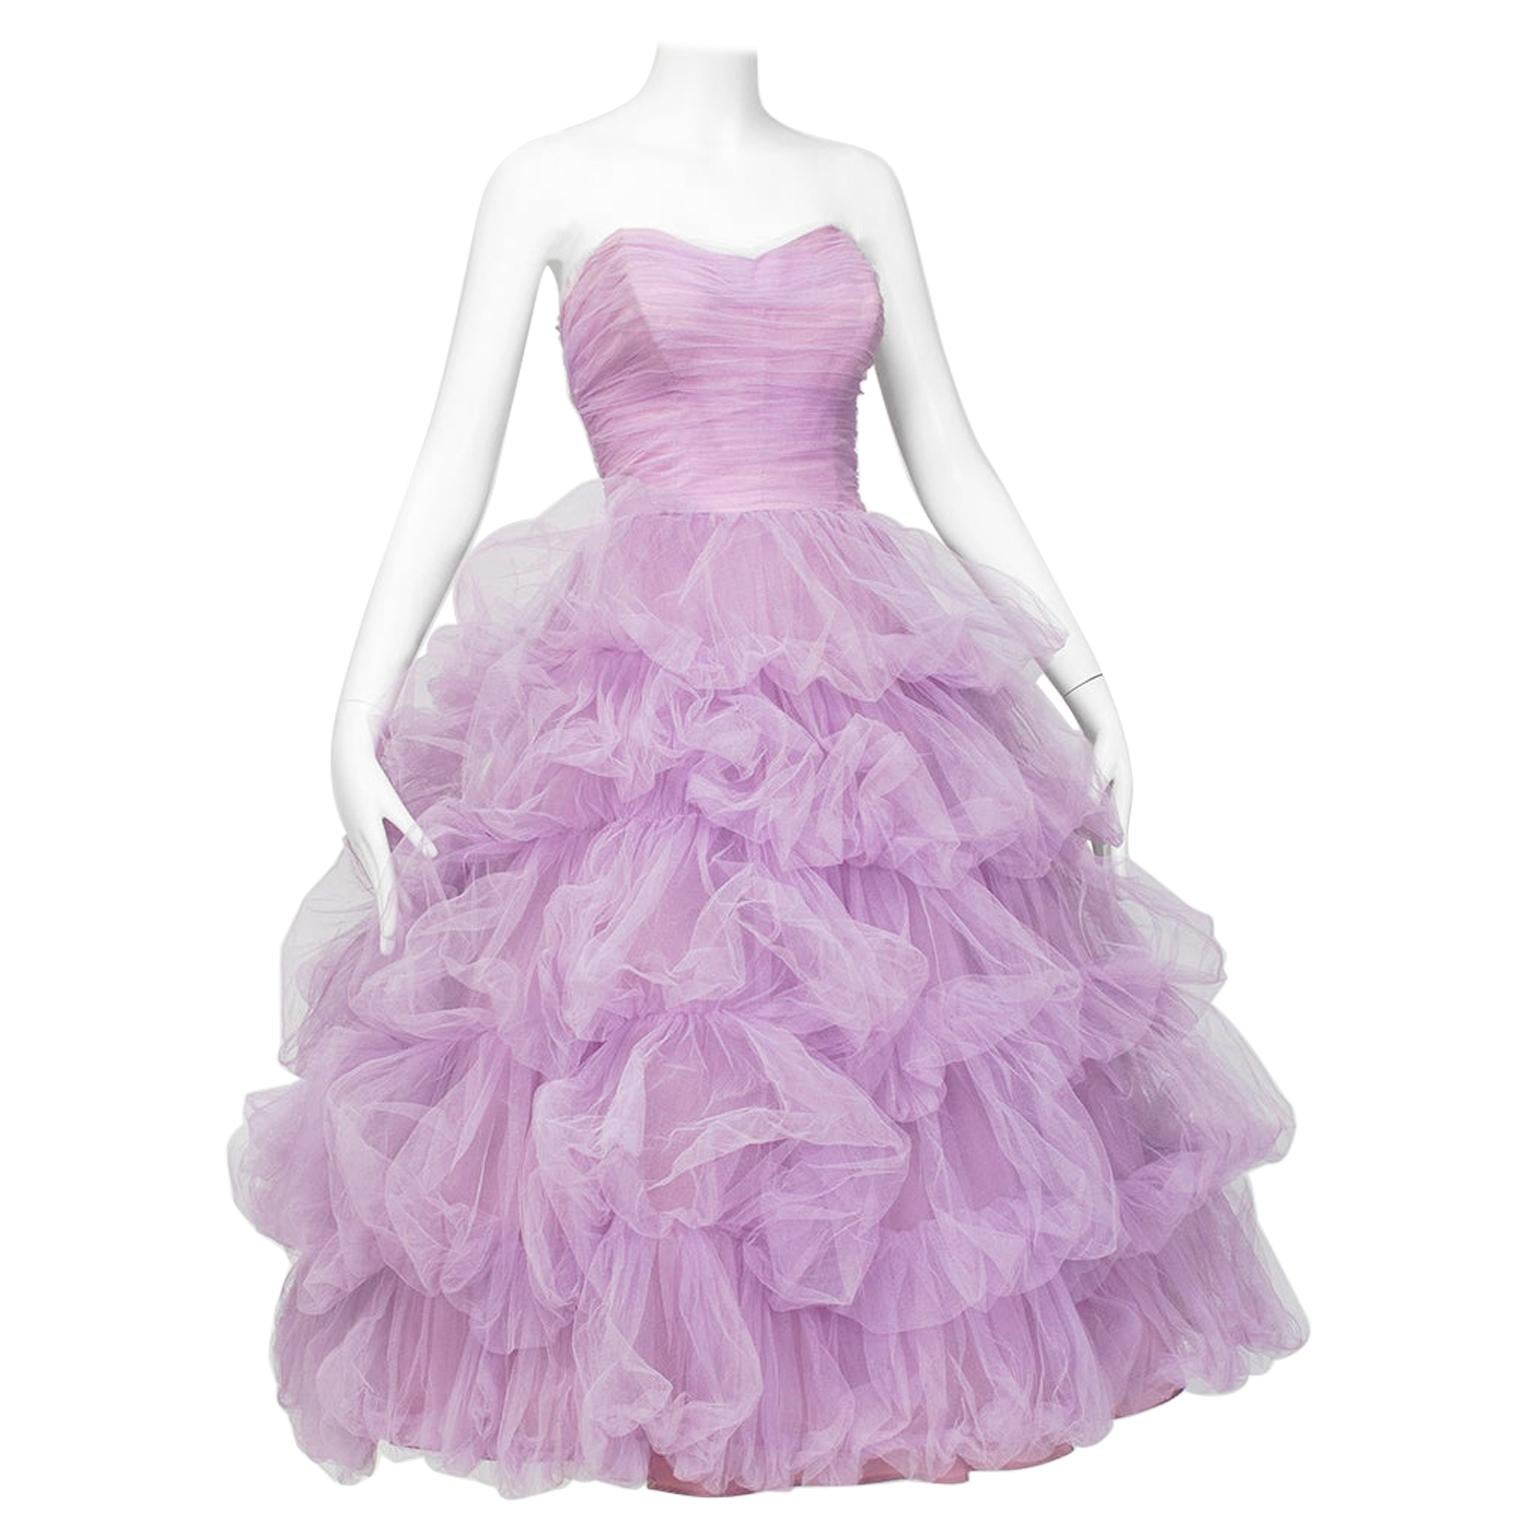 Voluminous Strapless Lavender Tulle Balloon-Ruffle Ballerina Ball Gown– S, 1950s